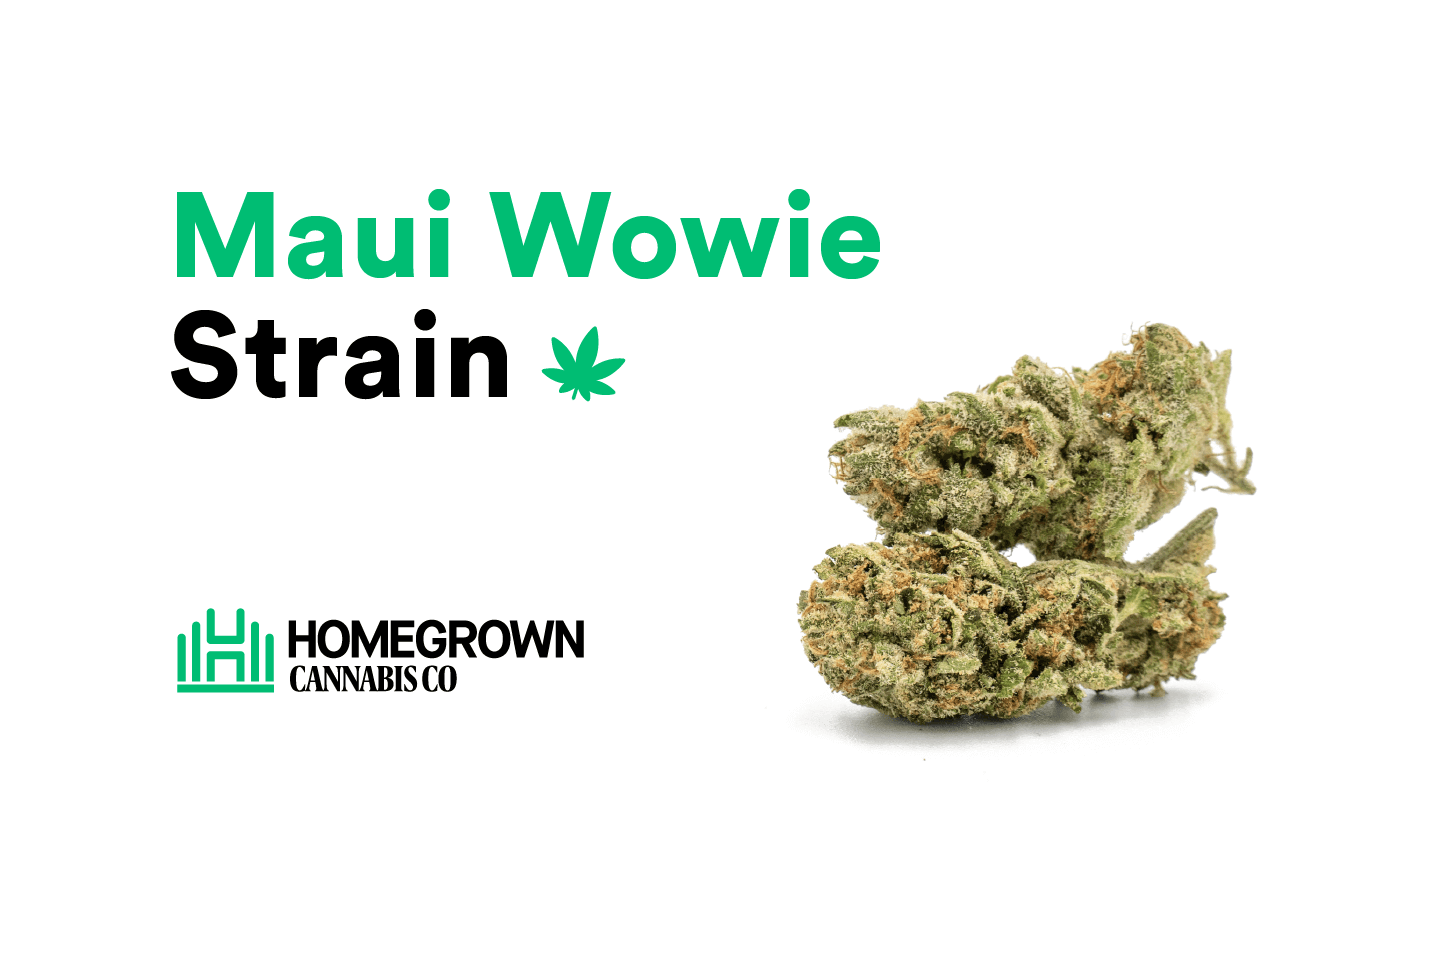 Maui Wowie strain